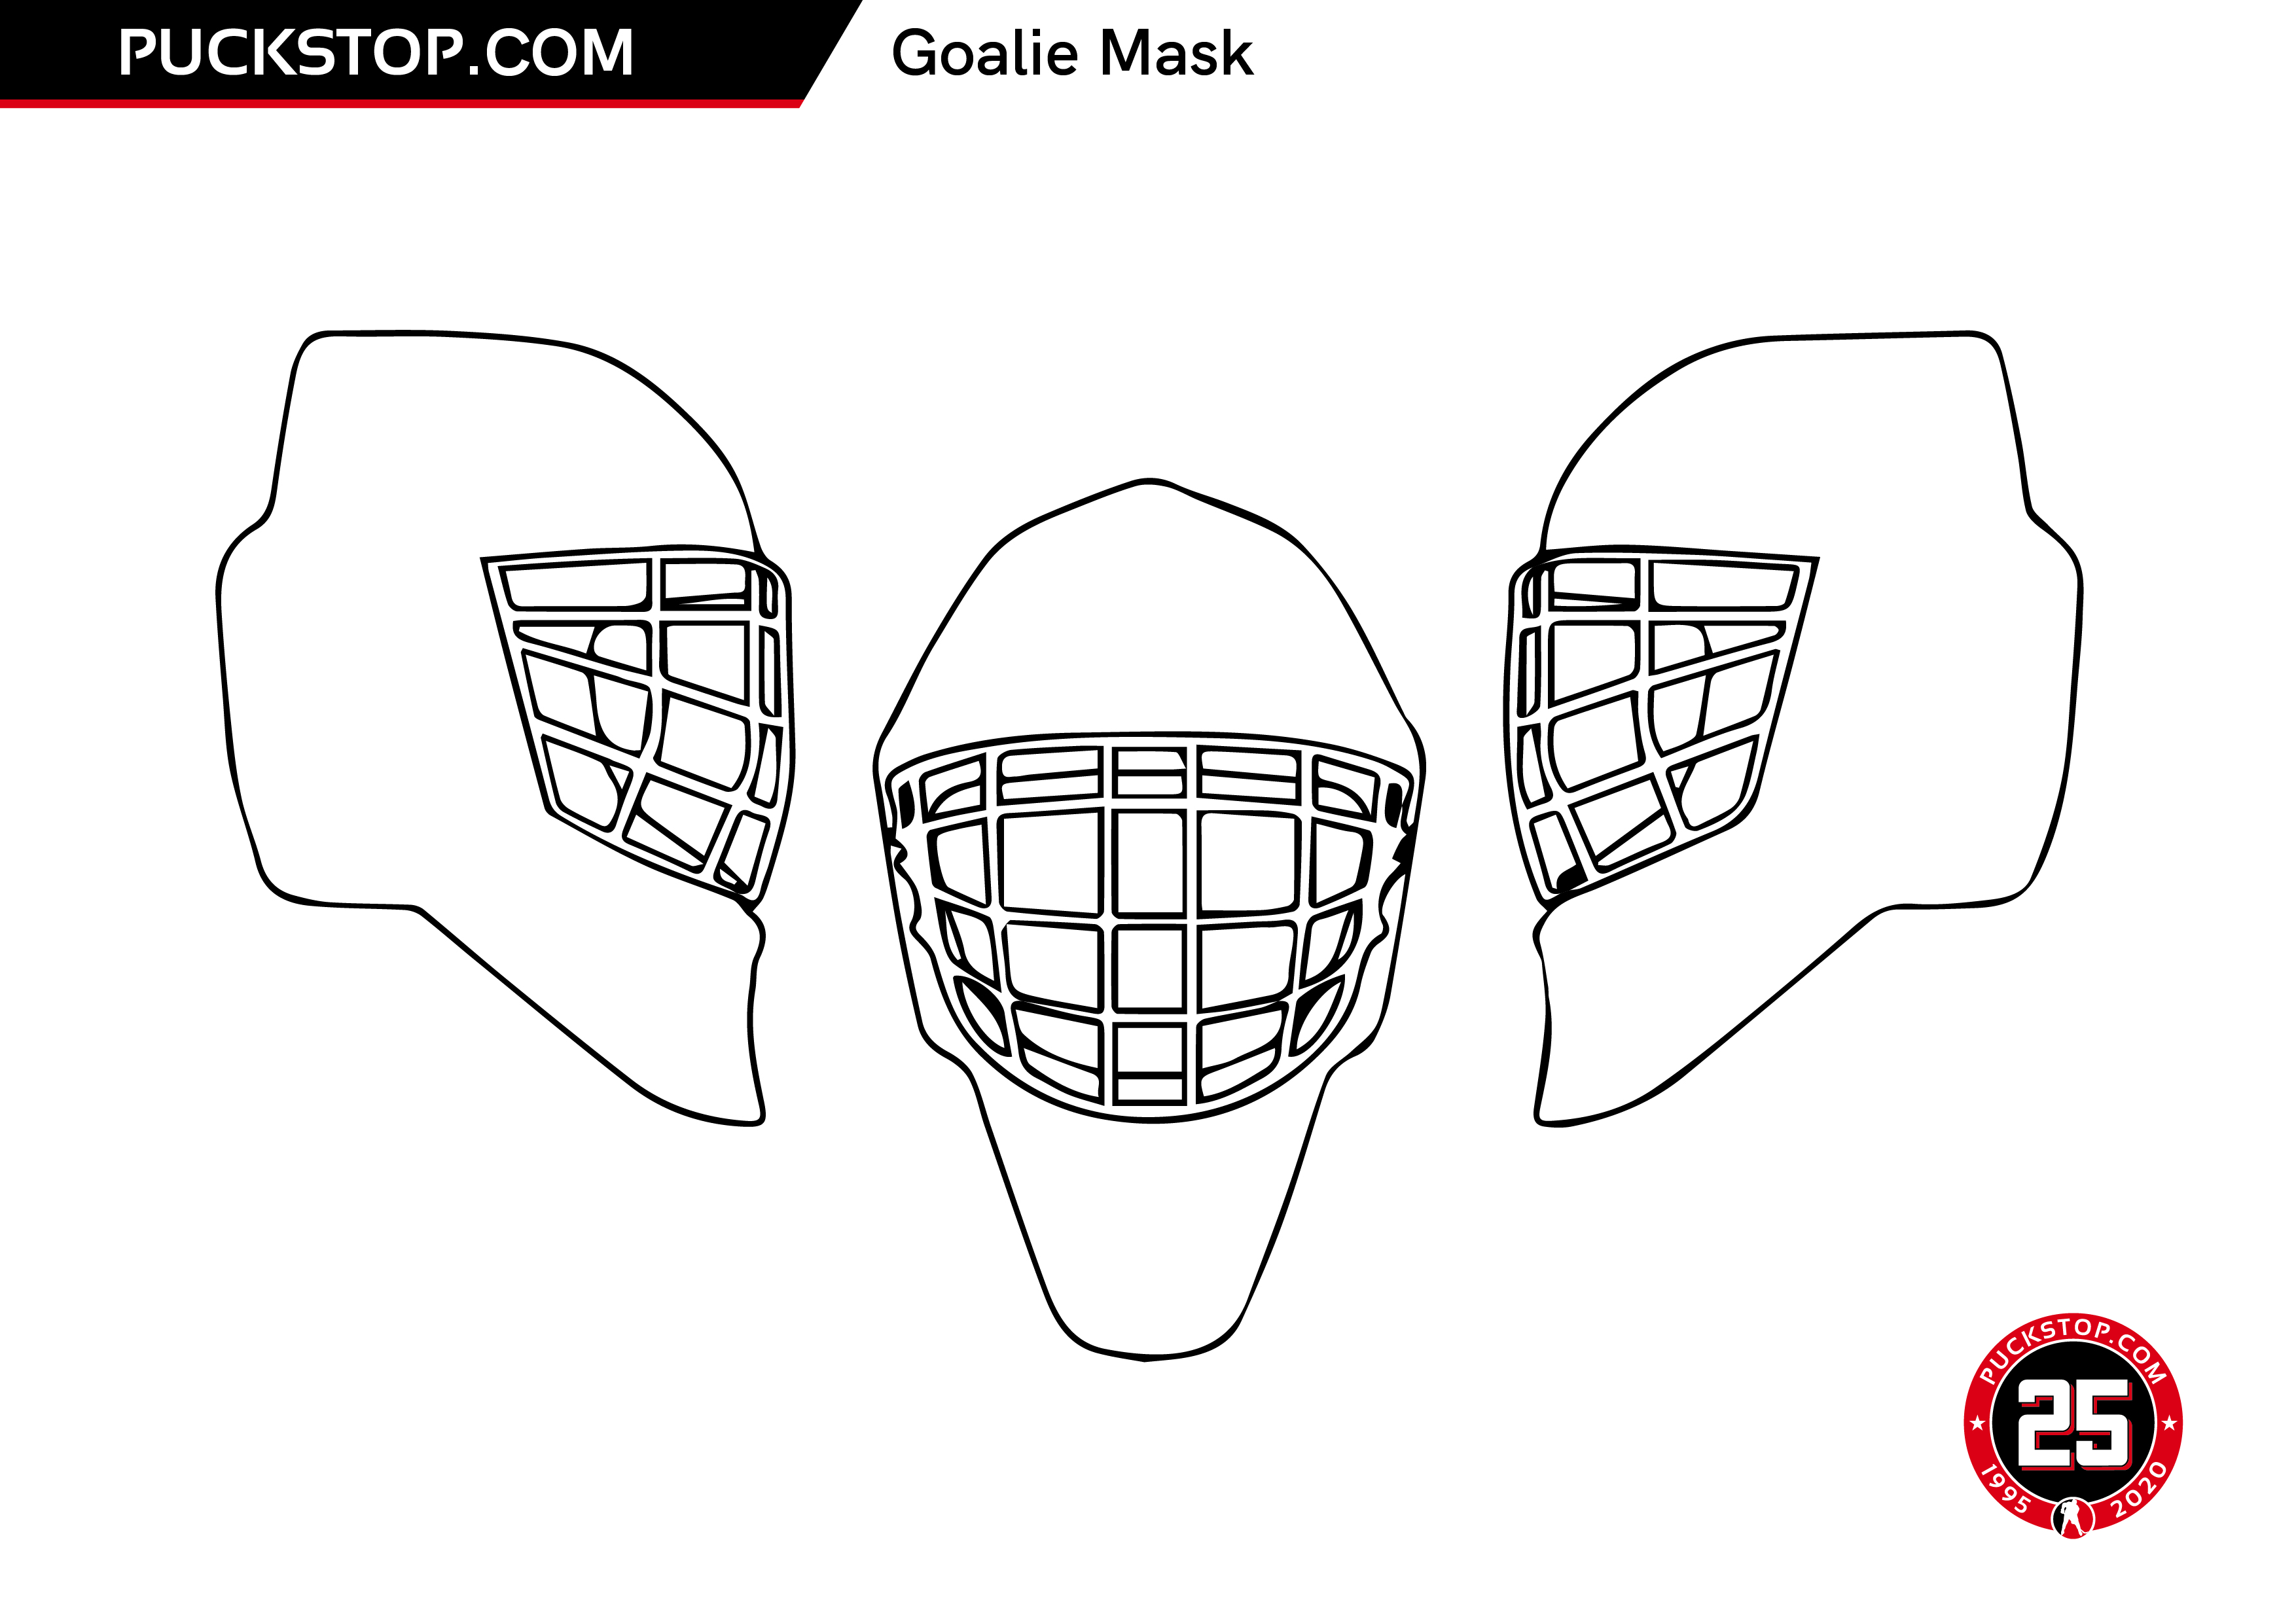 Puck Stop Hockey Colouring Sheets | Puckstop